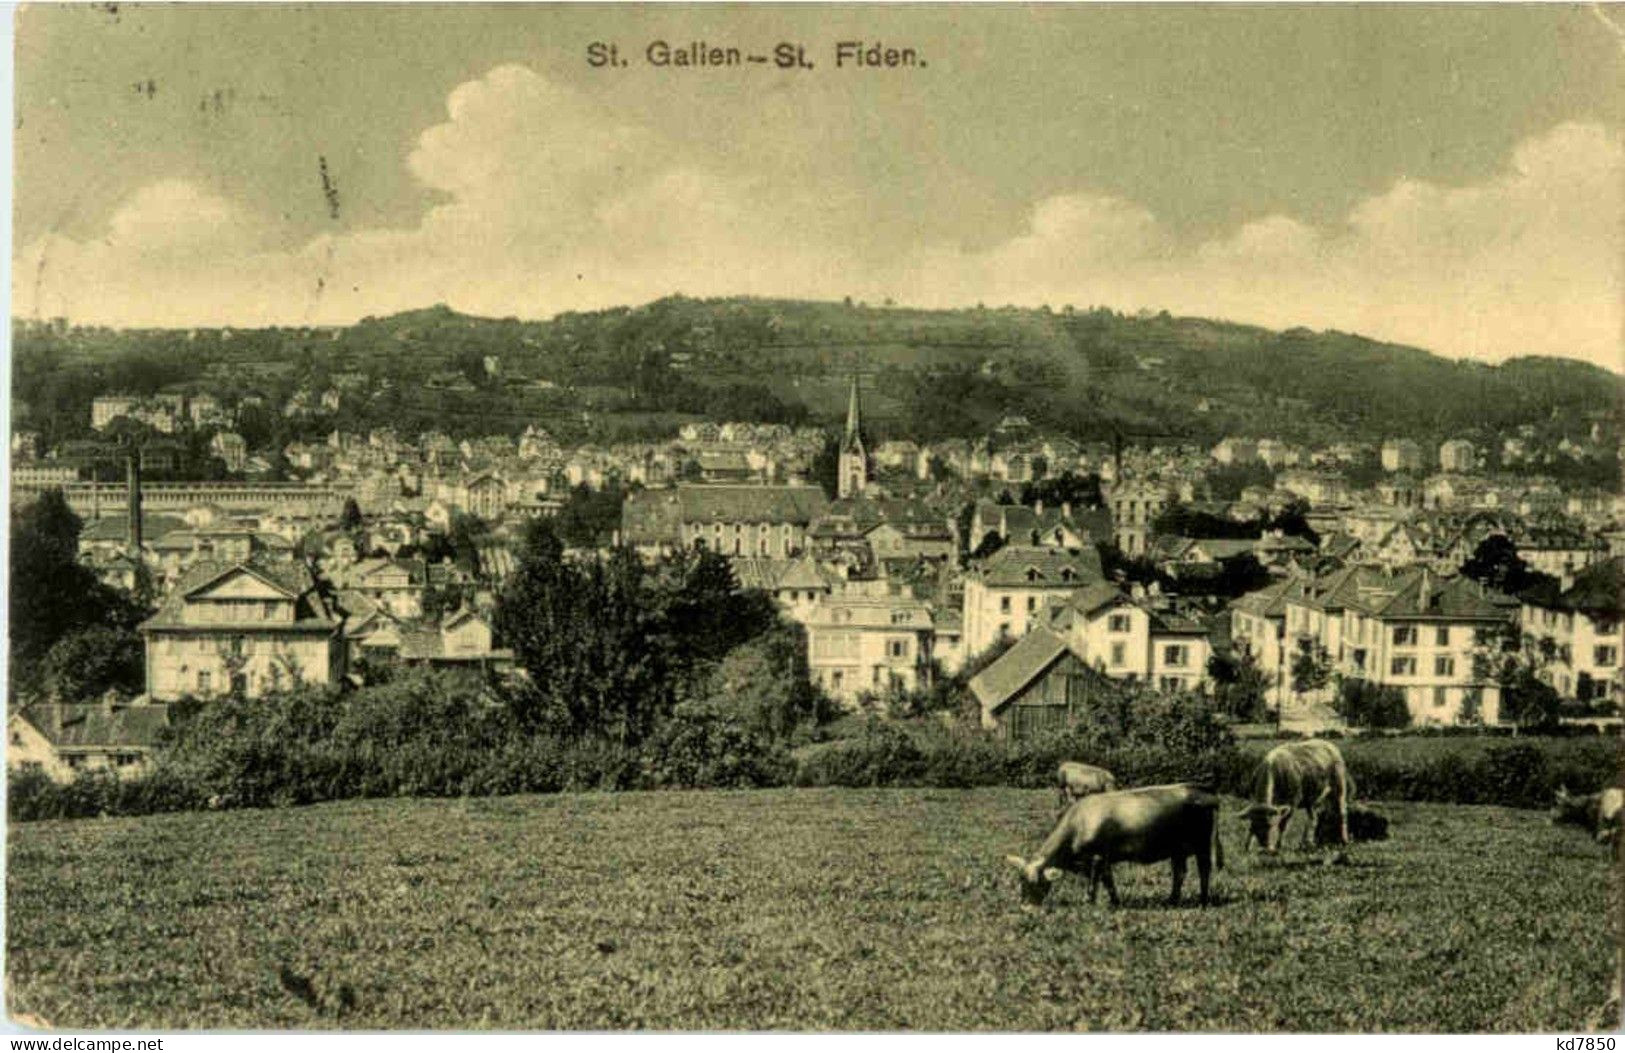 St. Gallen - St. Fiden - San Gallo